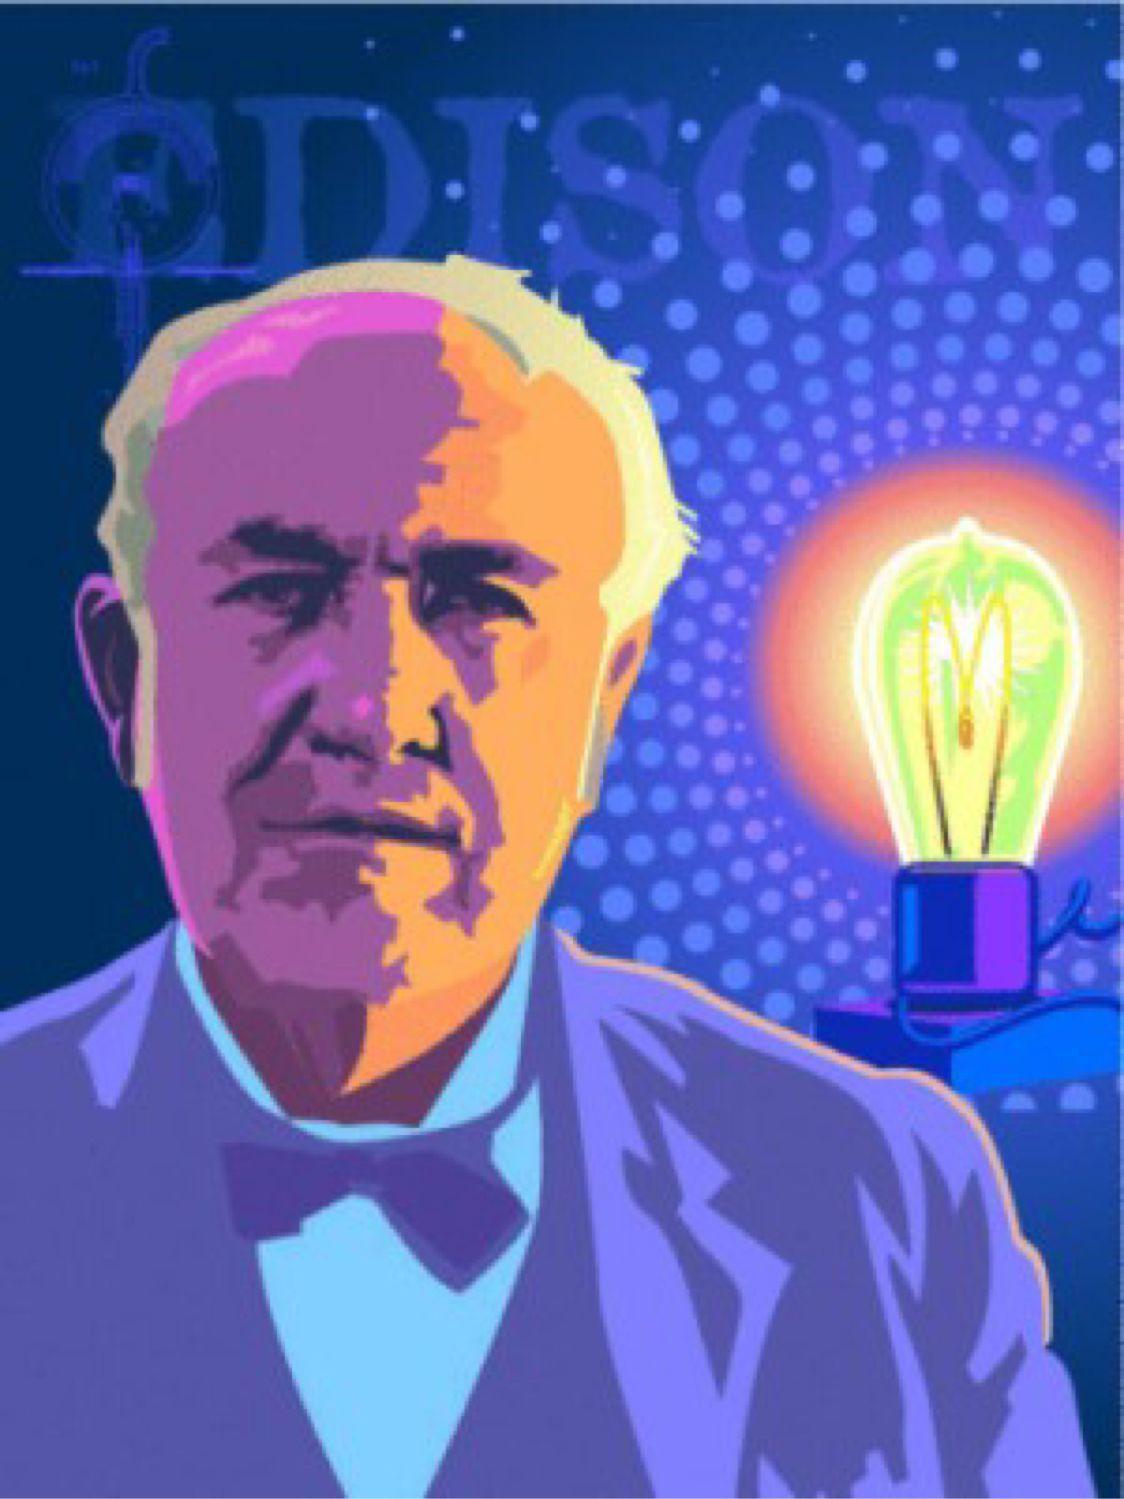 Thomas Edison!